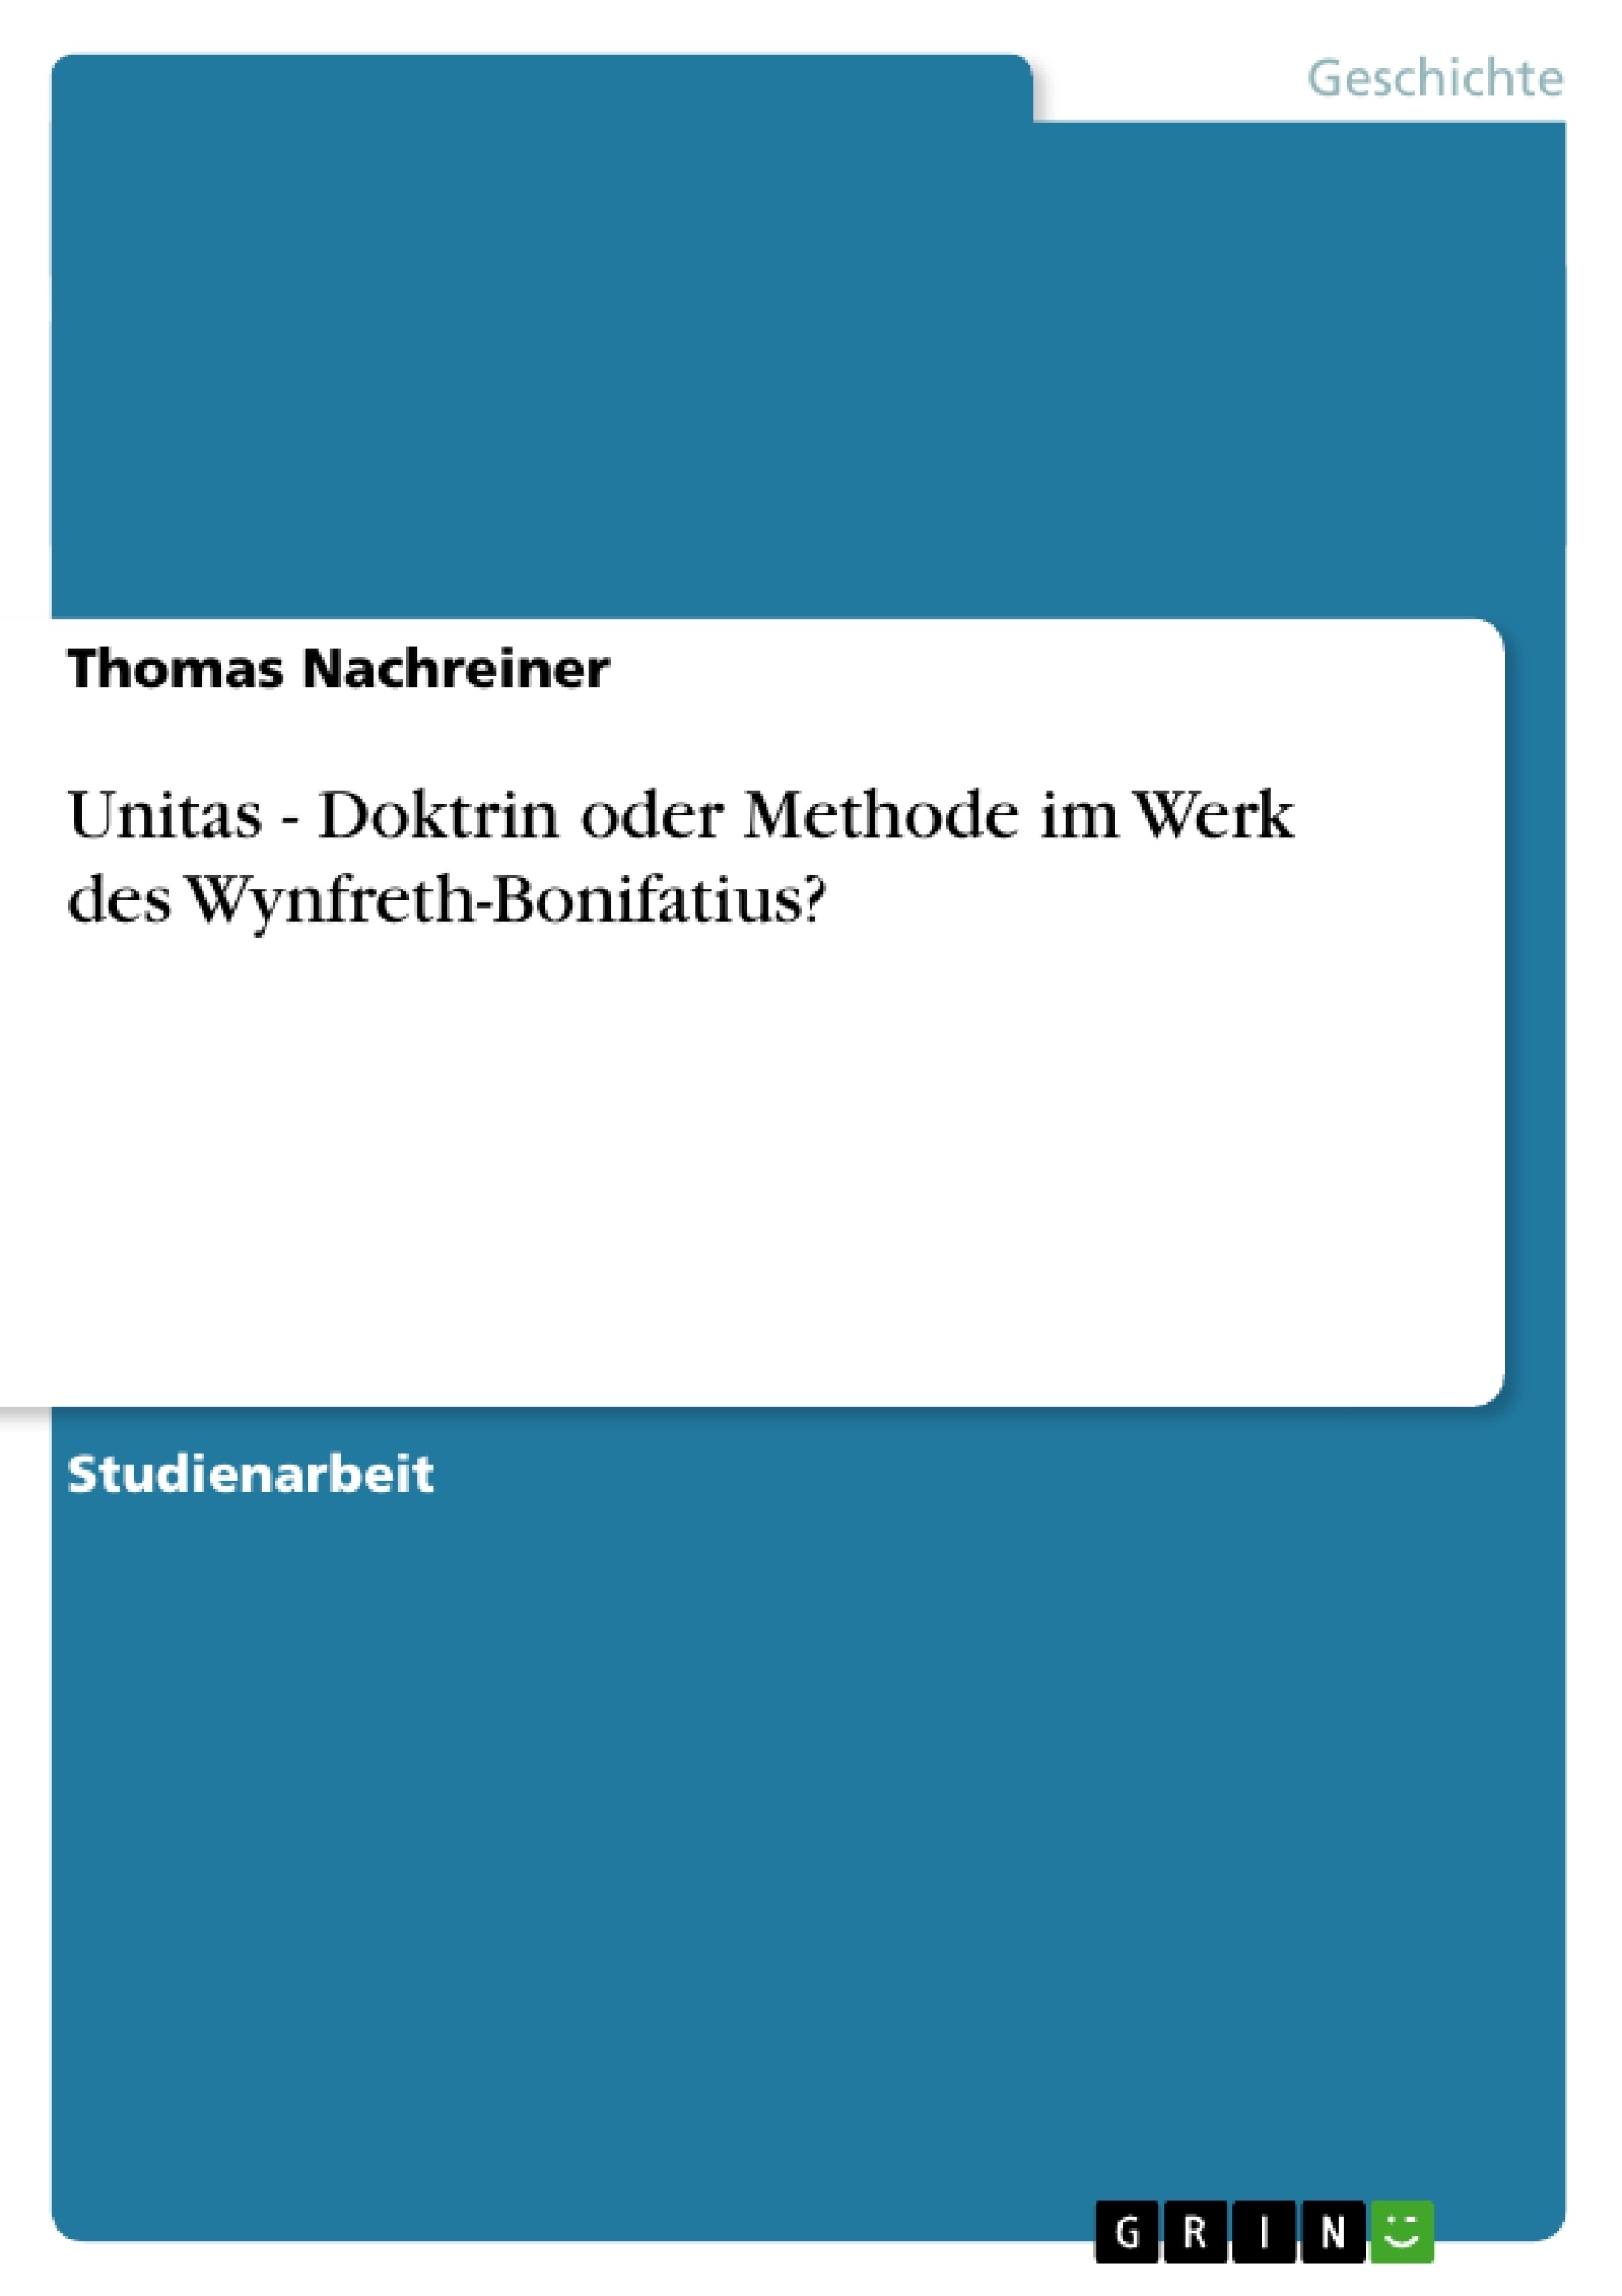 Title: Unitas - Doktrin oder Methode im Werk des Wynfreth-Bonifatius?